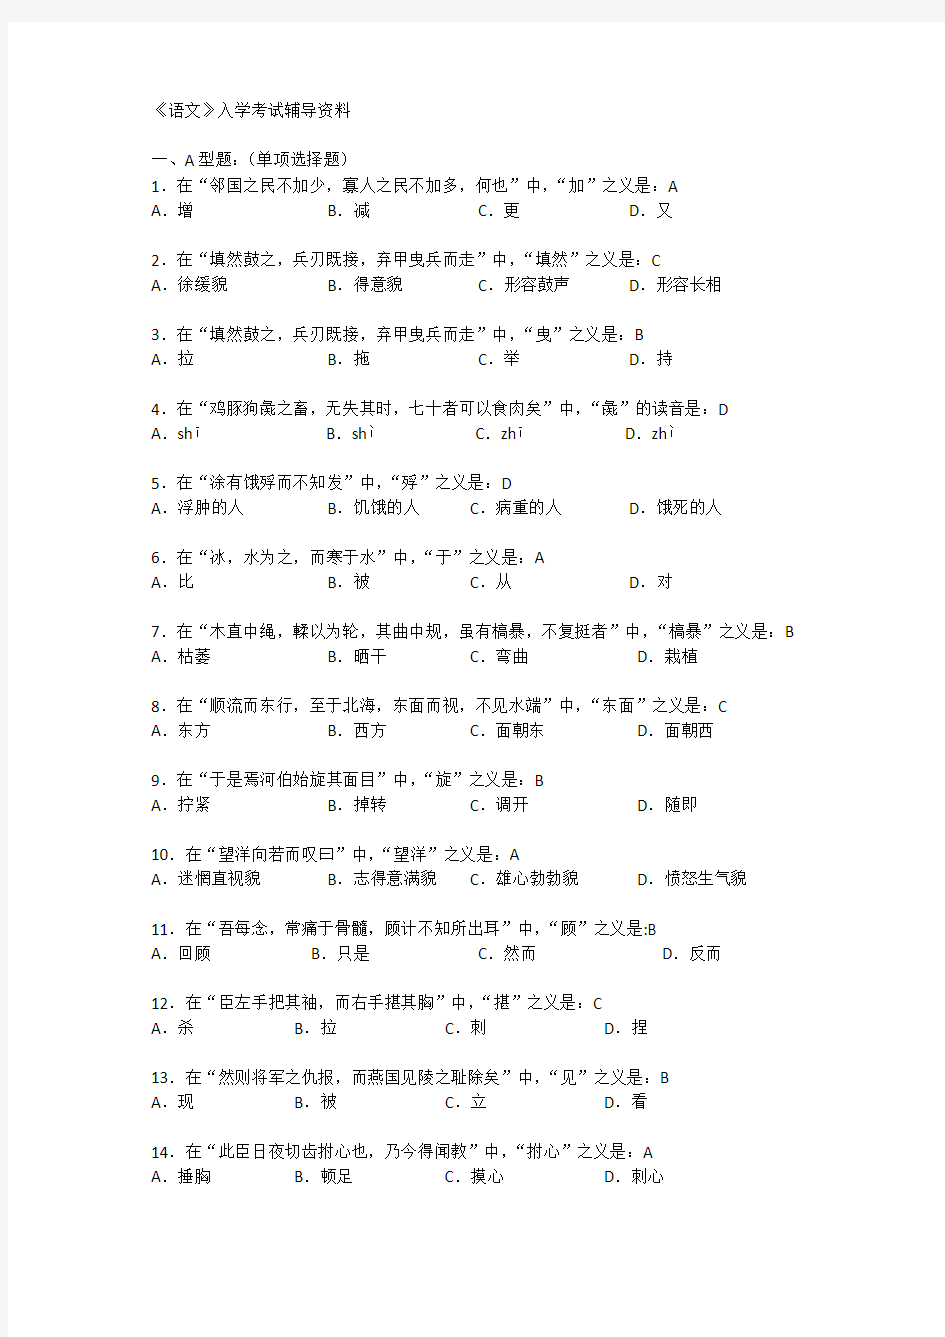 北京中医药大学远程教育学院-《语文》入学考试辅导资料